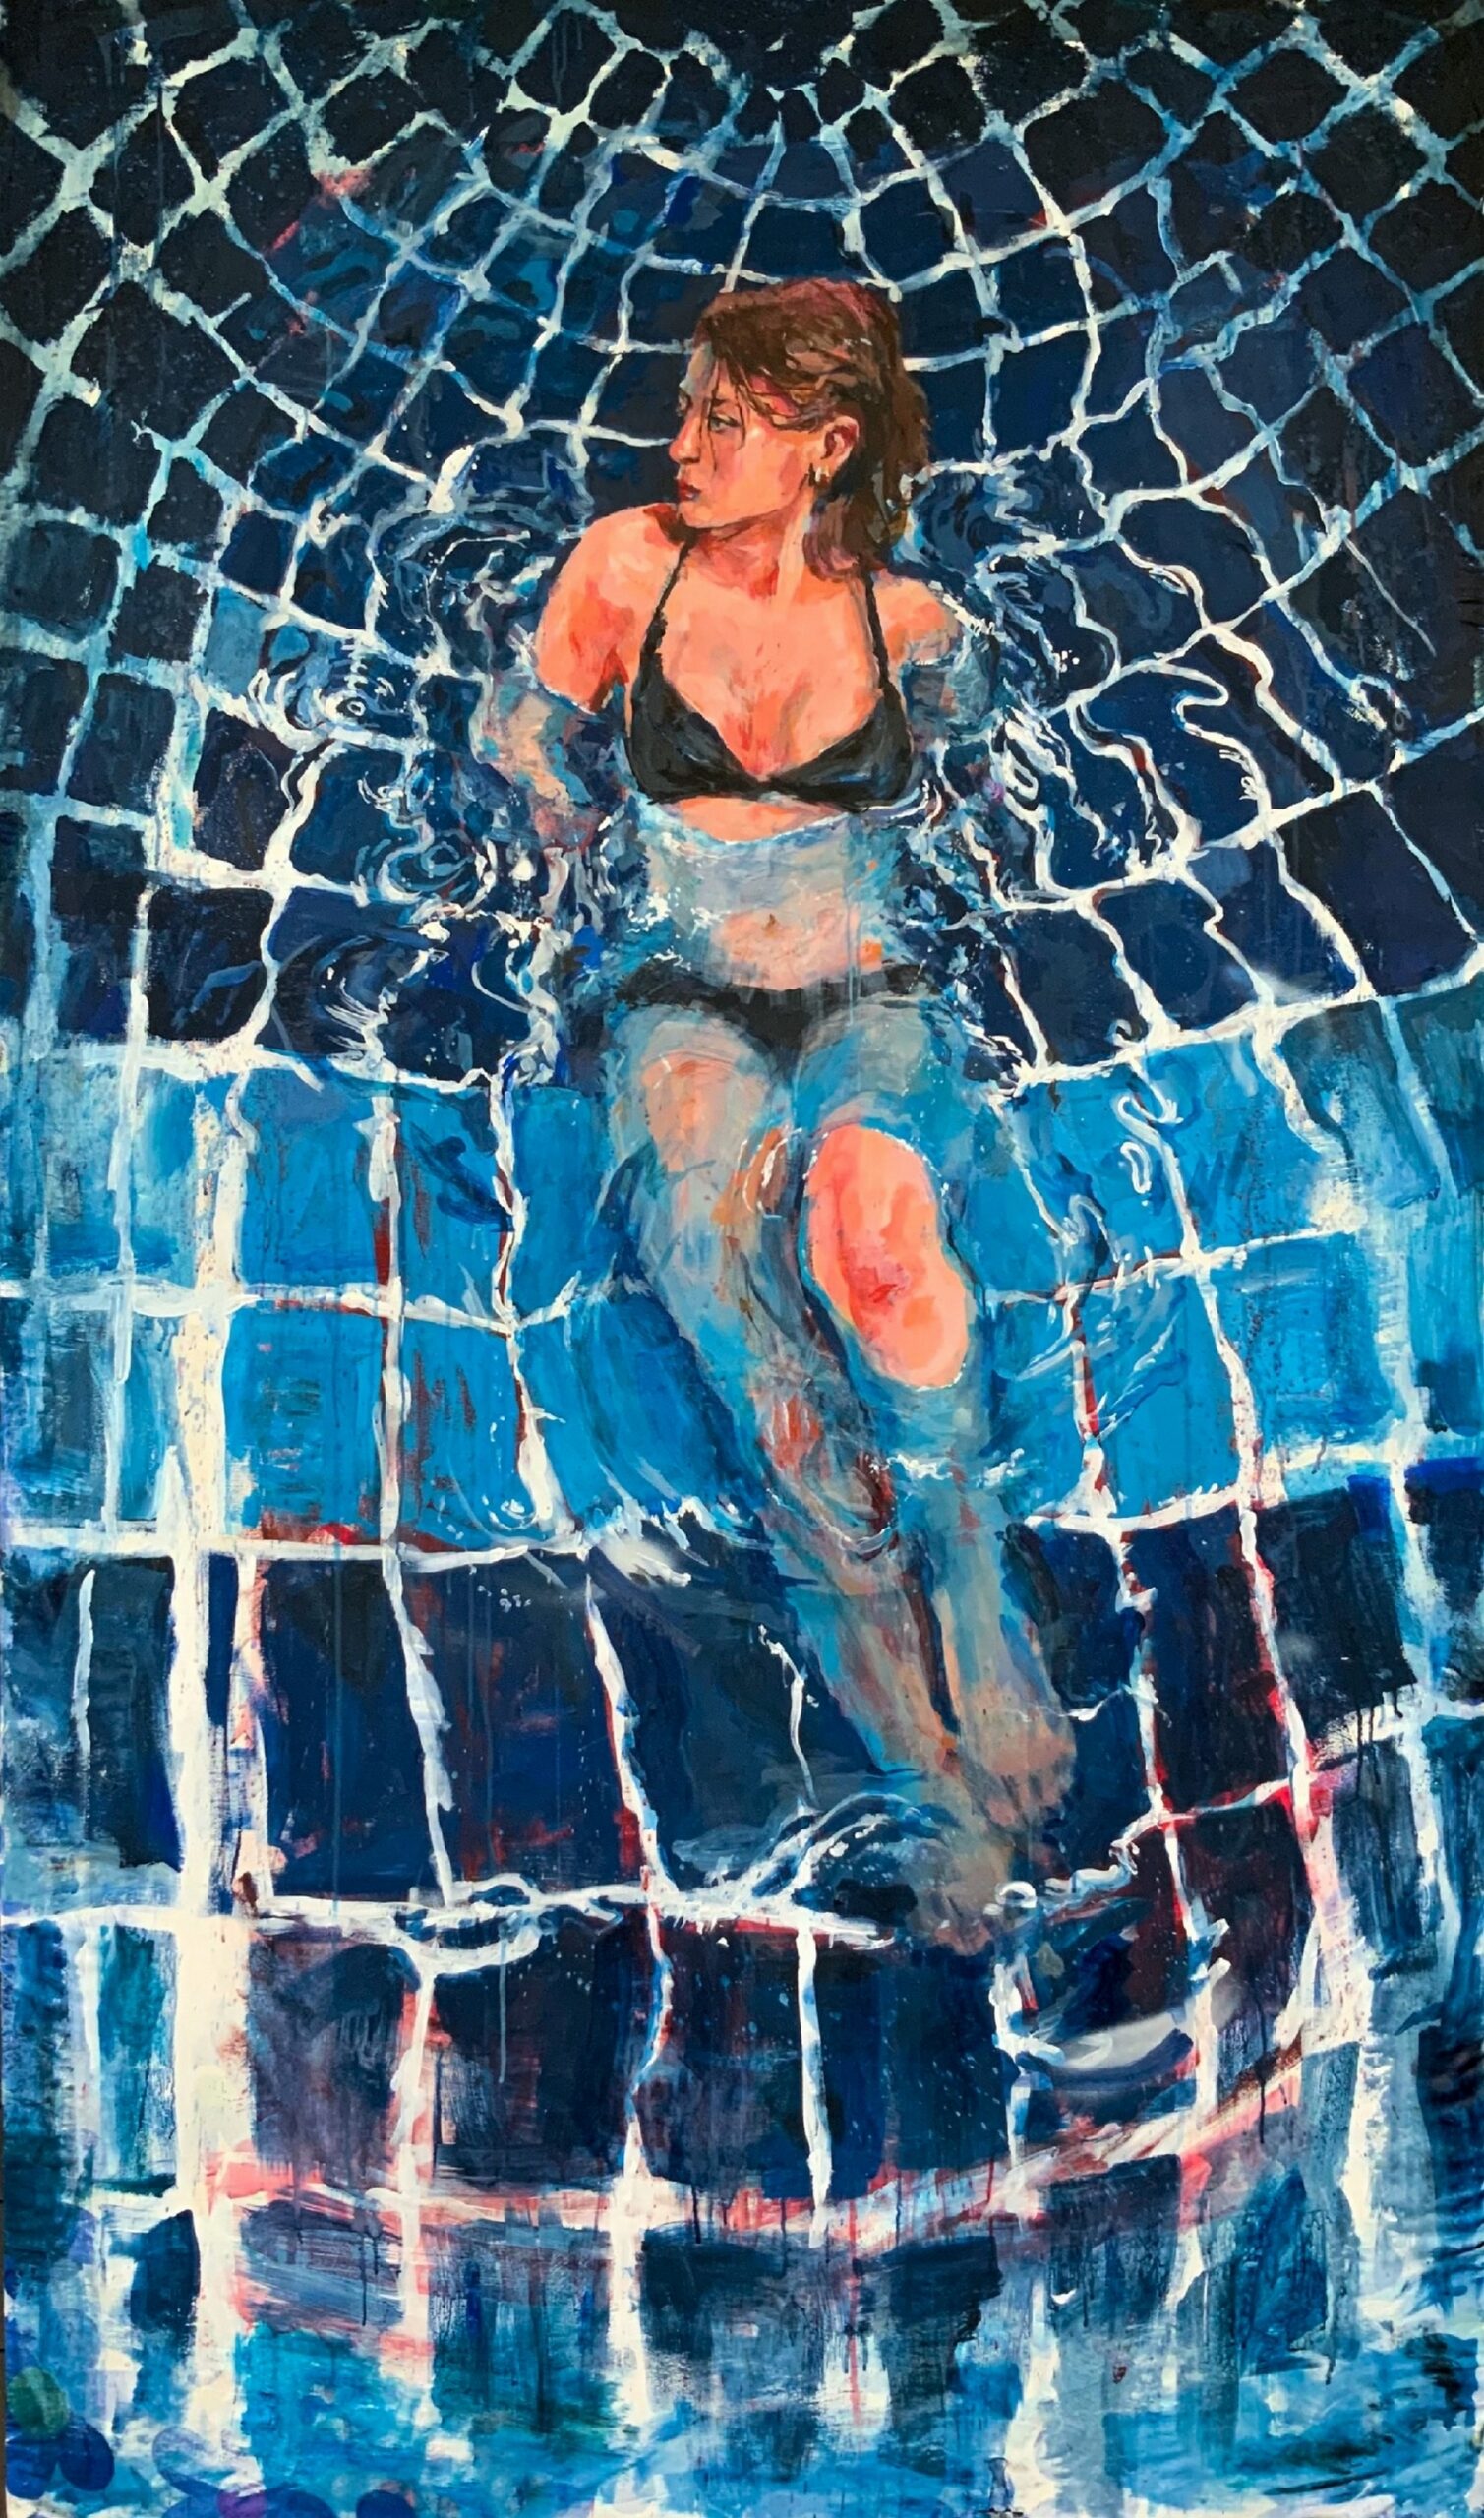  Widziana z góry, młoda kobieta leżąca we wzorzystym, wykładanym błękitnymi i granatowymi kafelkami basenie.